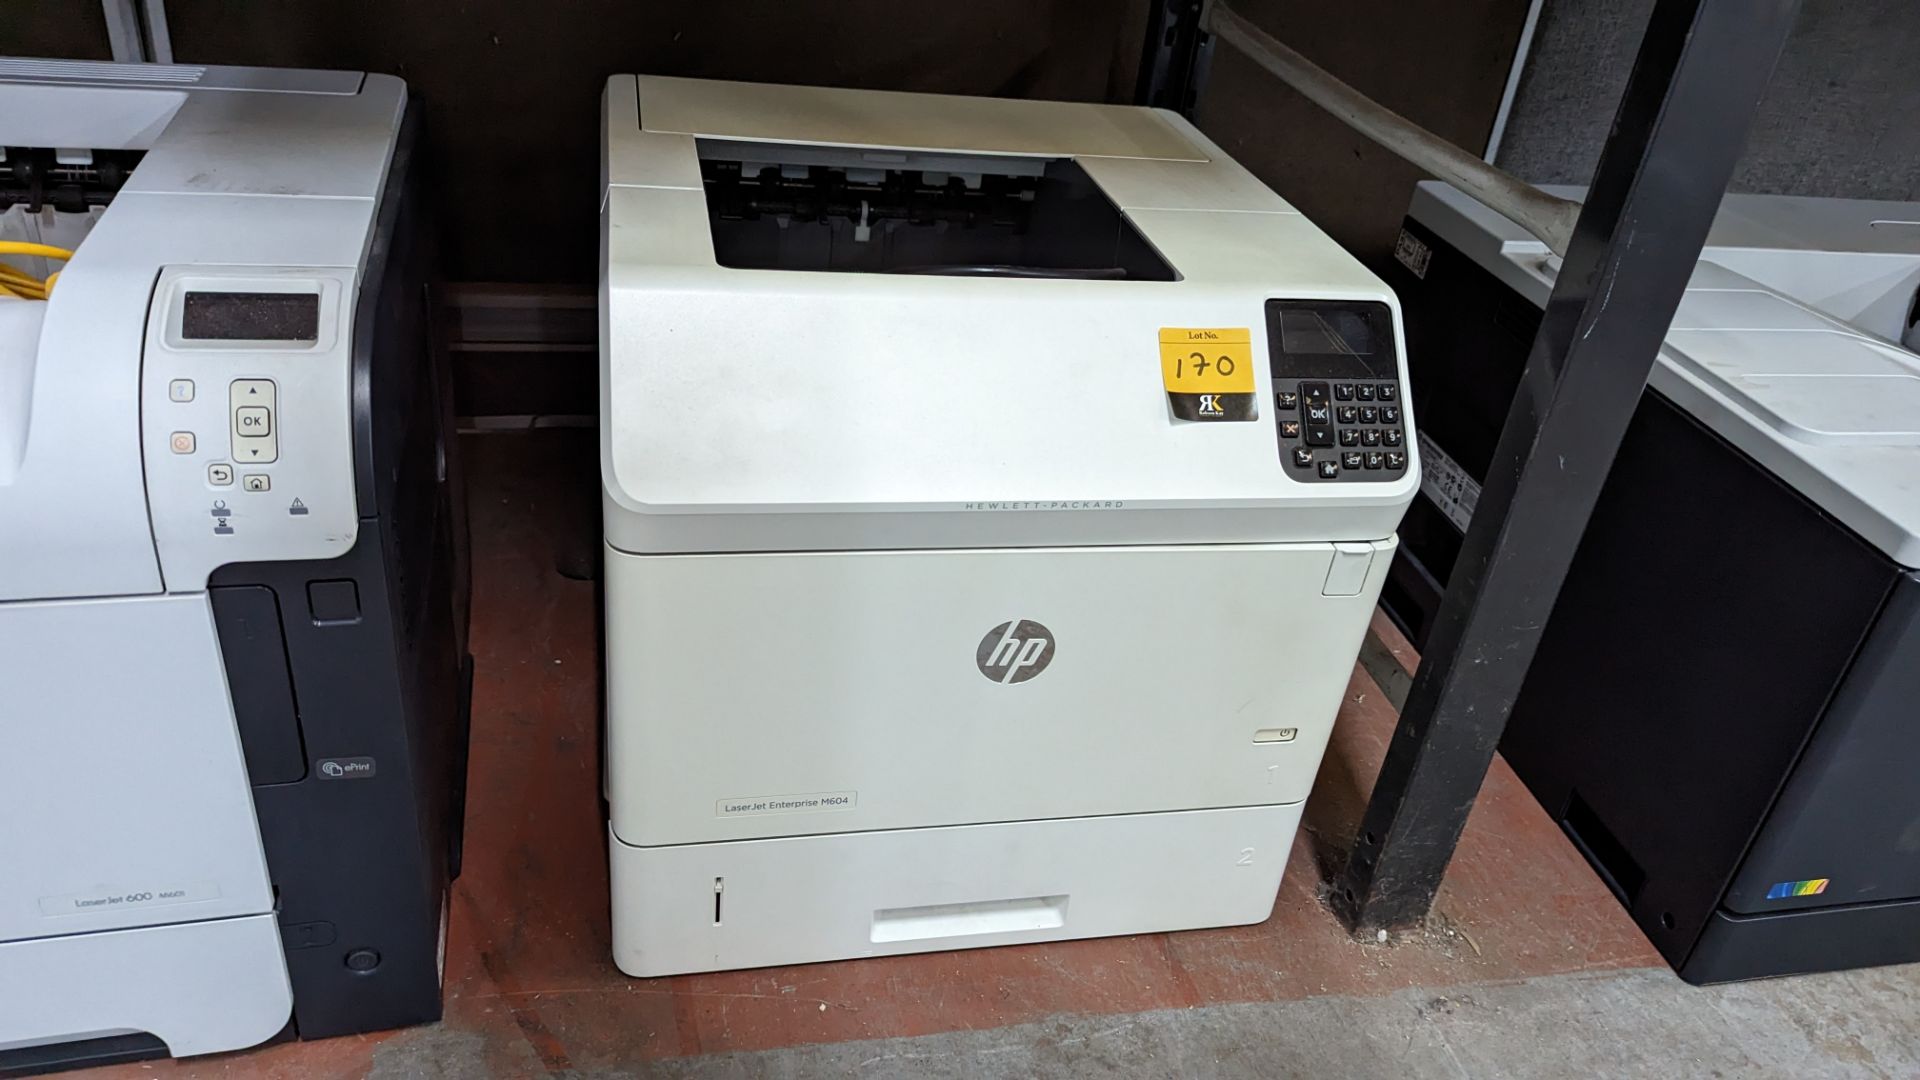 HP LaserJet Enterprise M604 printer - Image 3 of 6